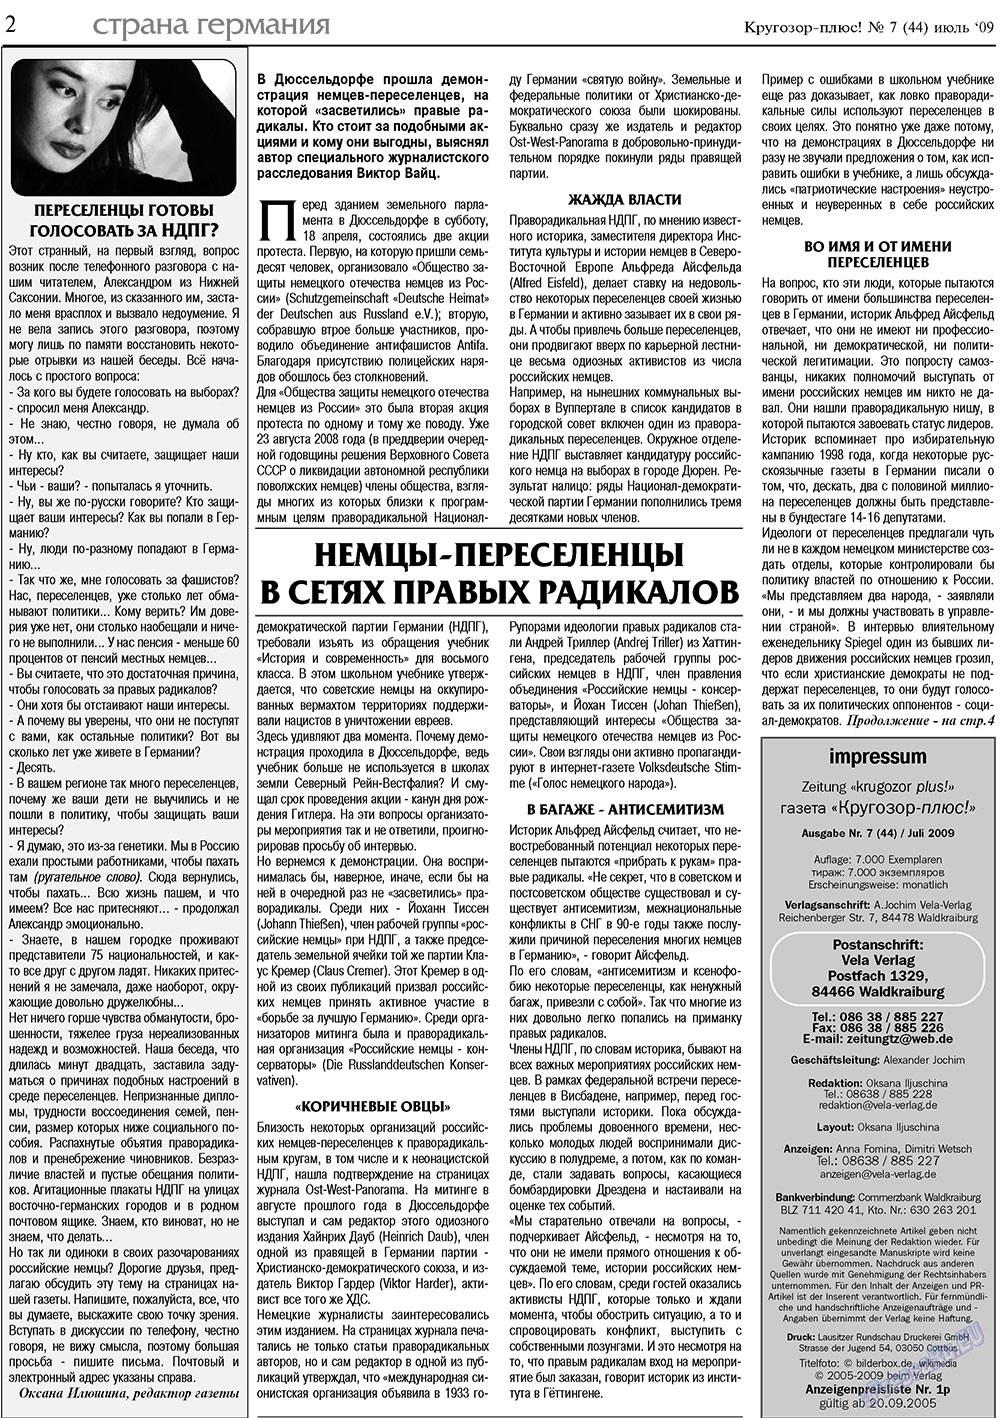 Кругозор плюс!, газета. 2009 №7 стр.2